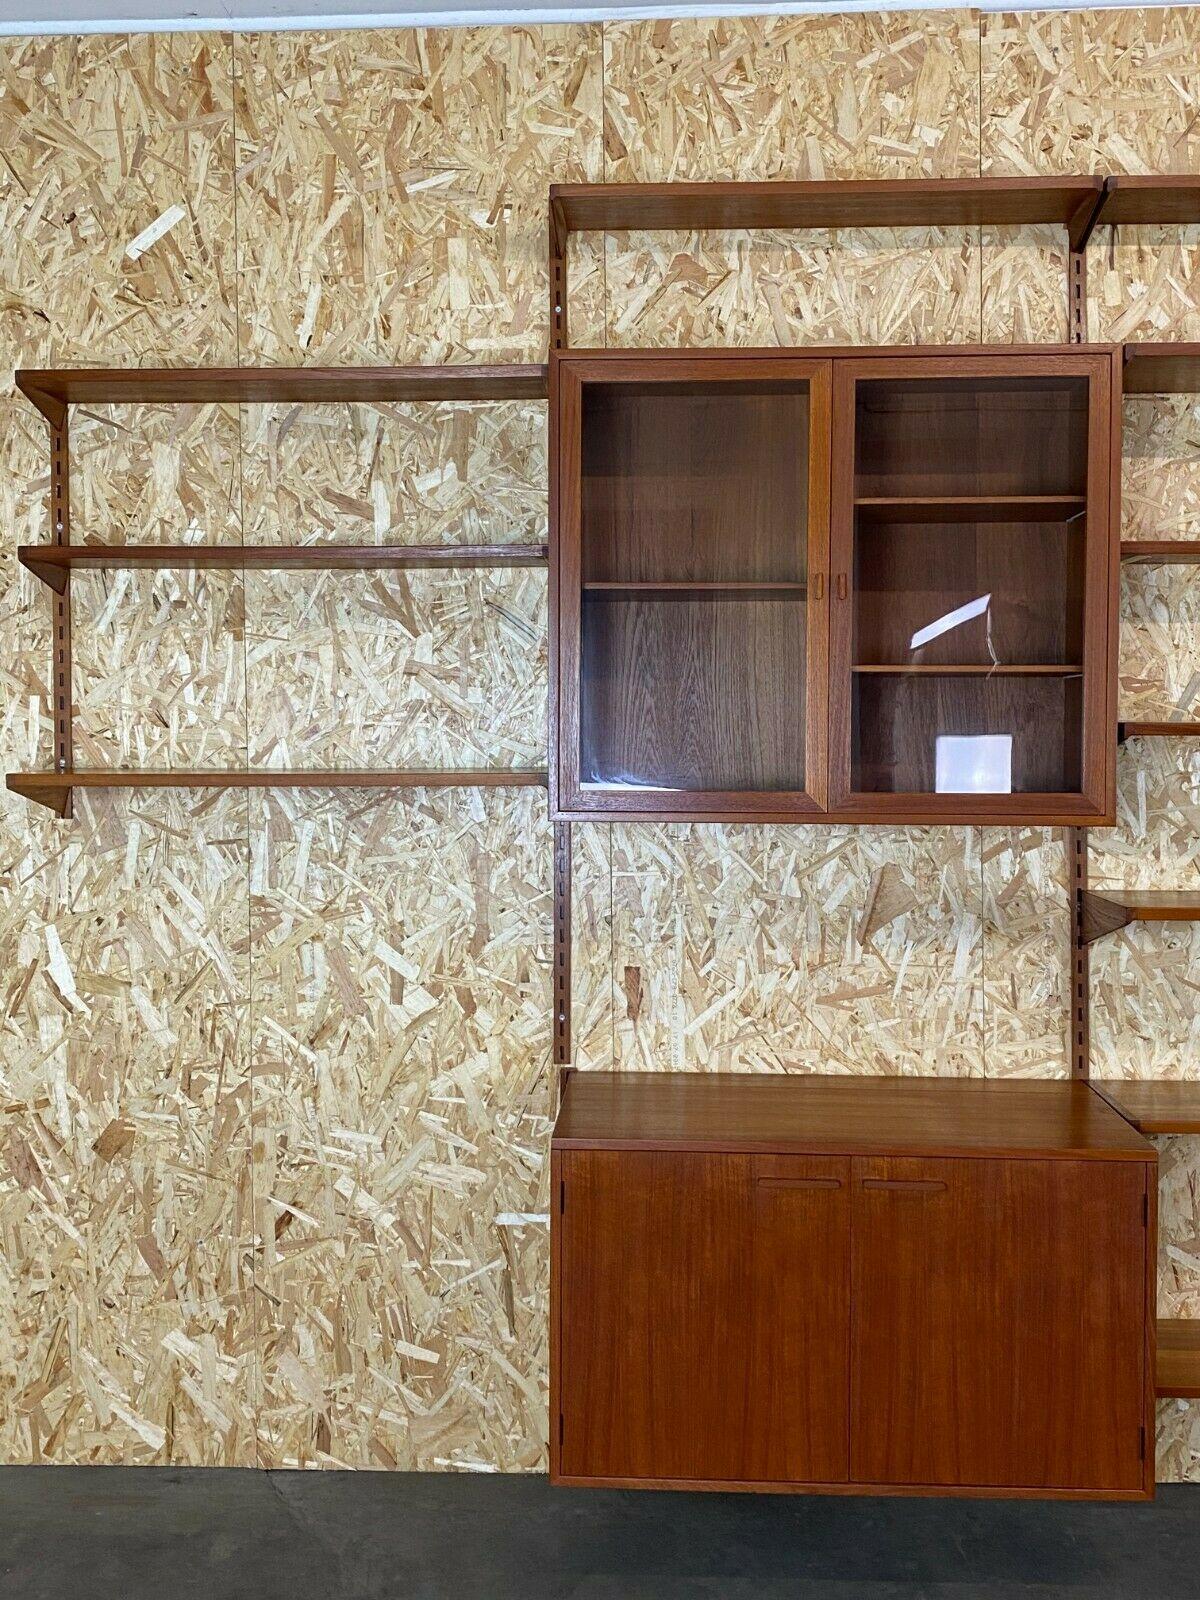 European 60s 70s Teak Teak Shelf Wall Unit Kai Kristiansen Danish Design 60s For Sale